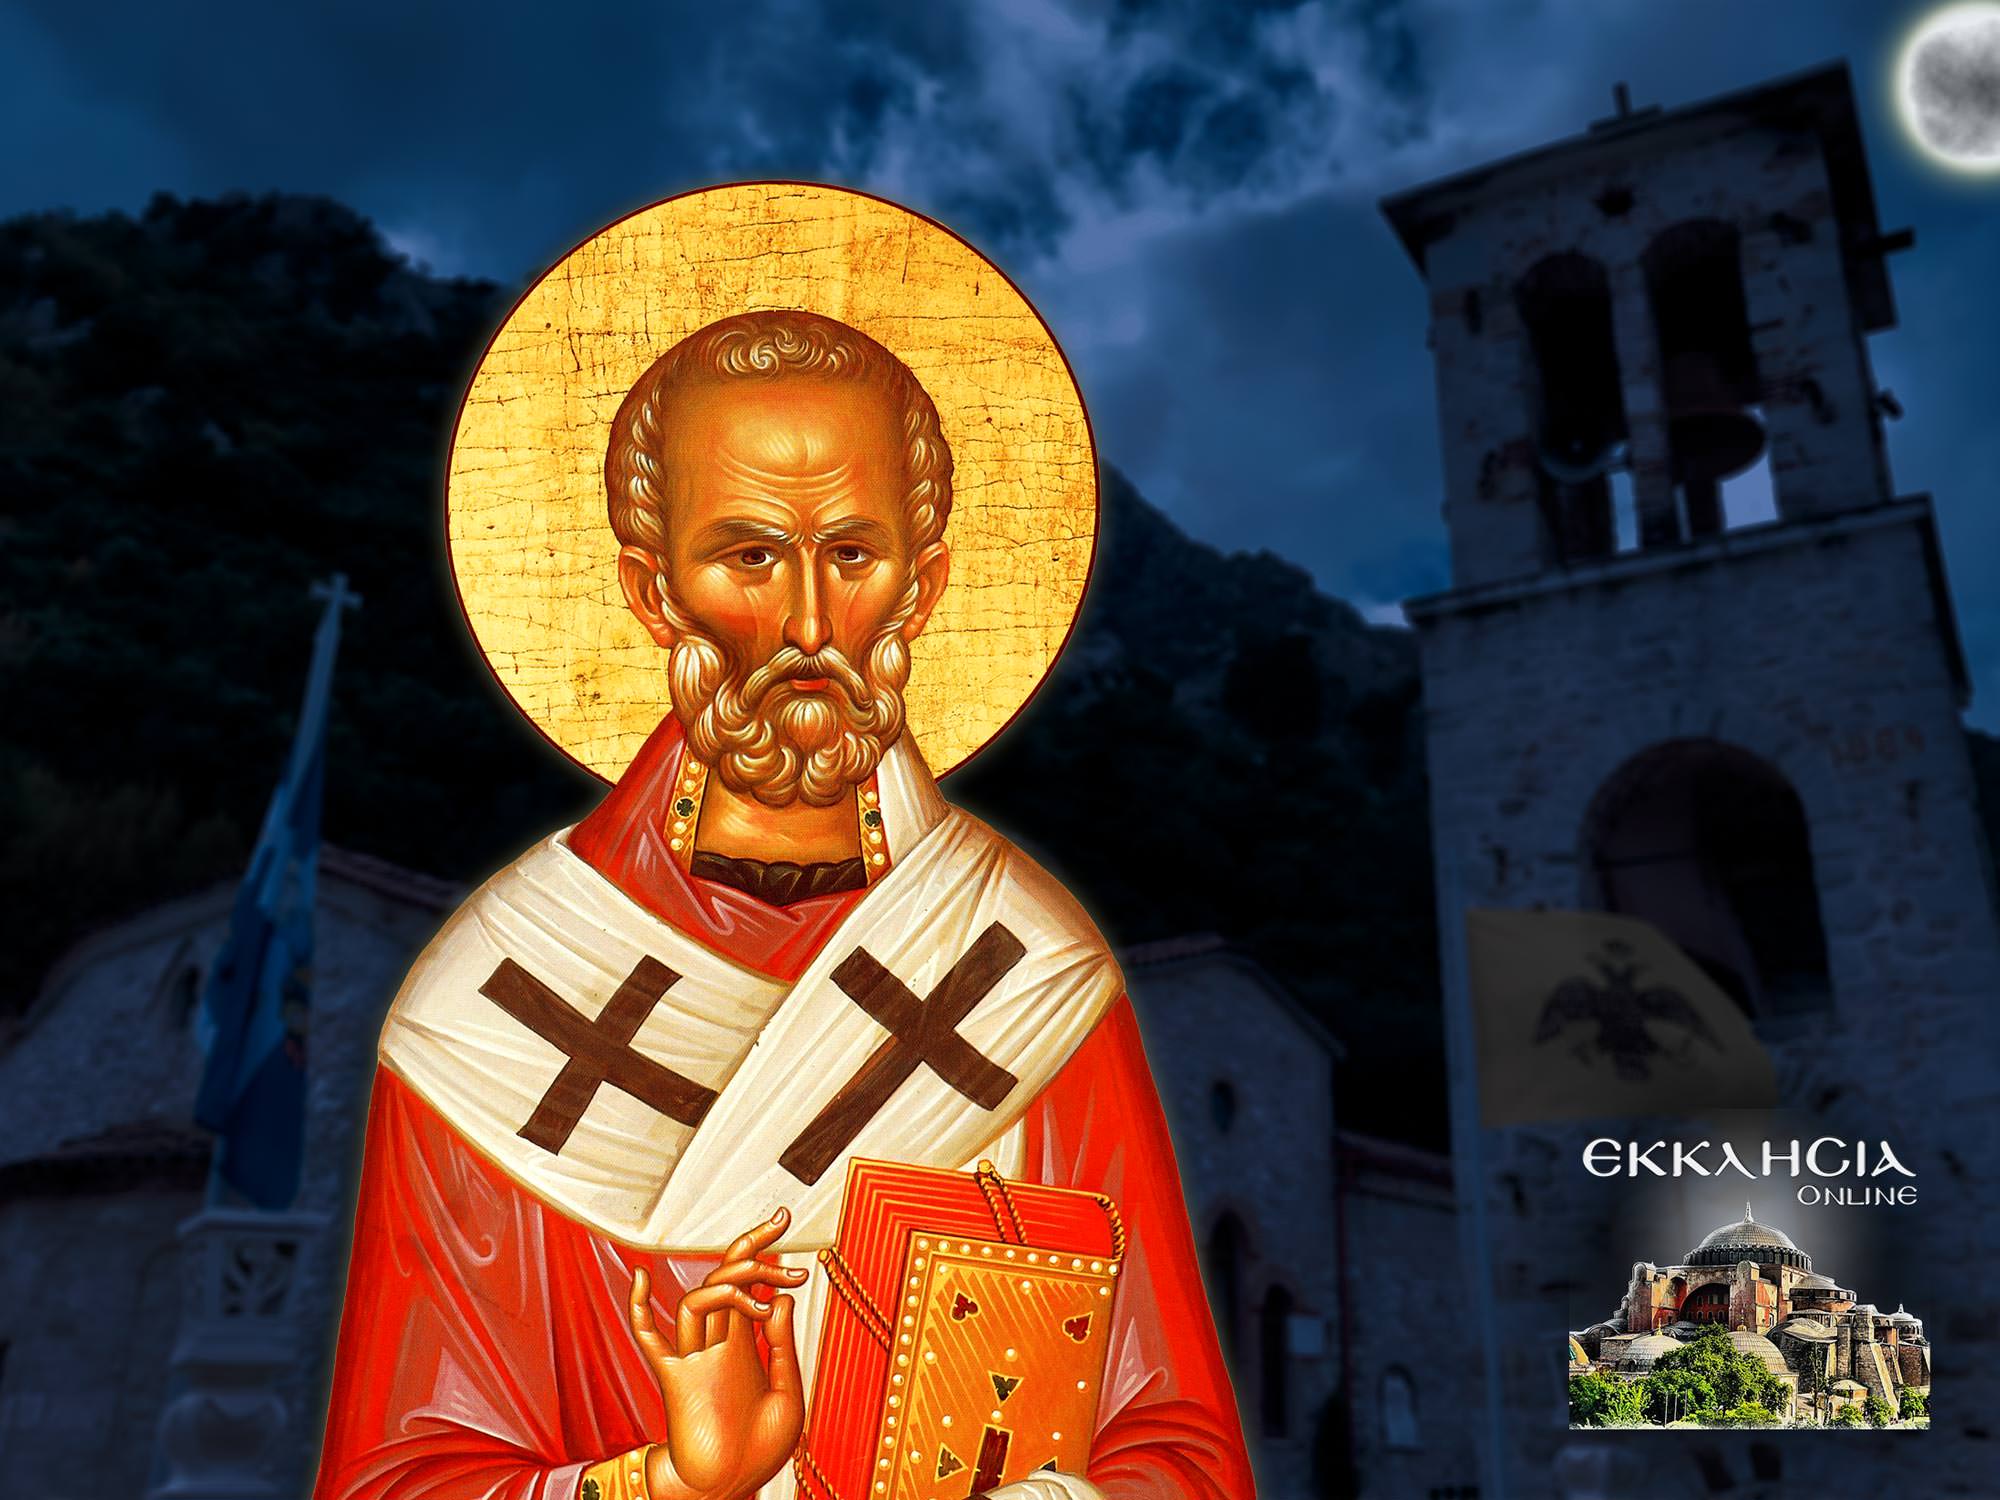 Άγιος Νικόλαος Αρχιεπίσκοπος Μύρων της Λυκίας και Θαυματουργός 6 Δεκεμβρίου